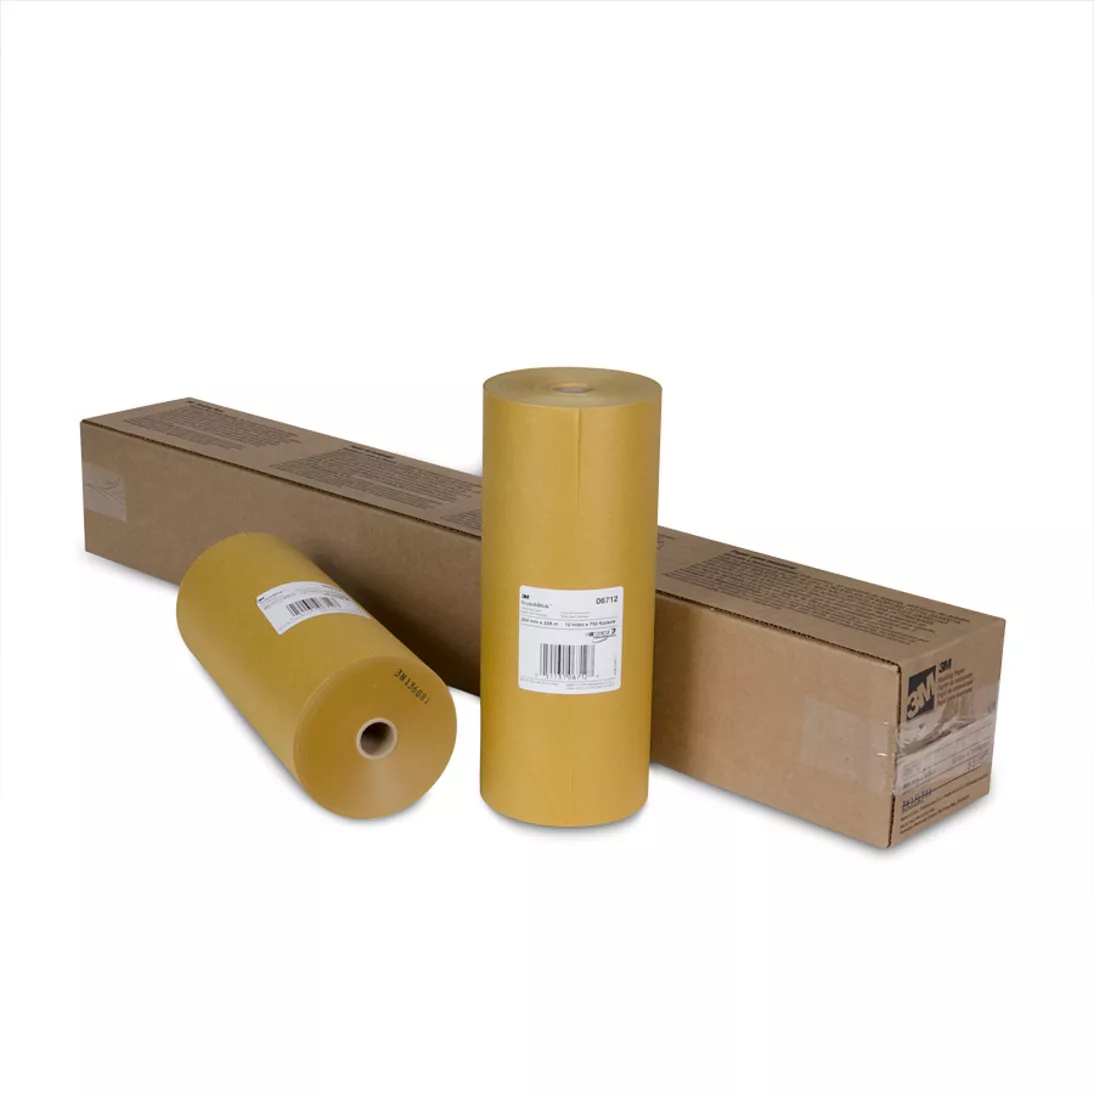 3M™ Scotchblok™ Masking Paper, 06712, 12 in x 750 ft, 3 per case